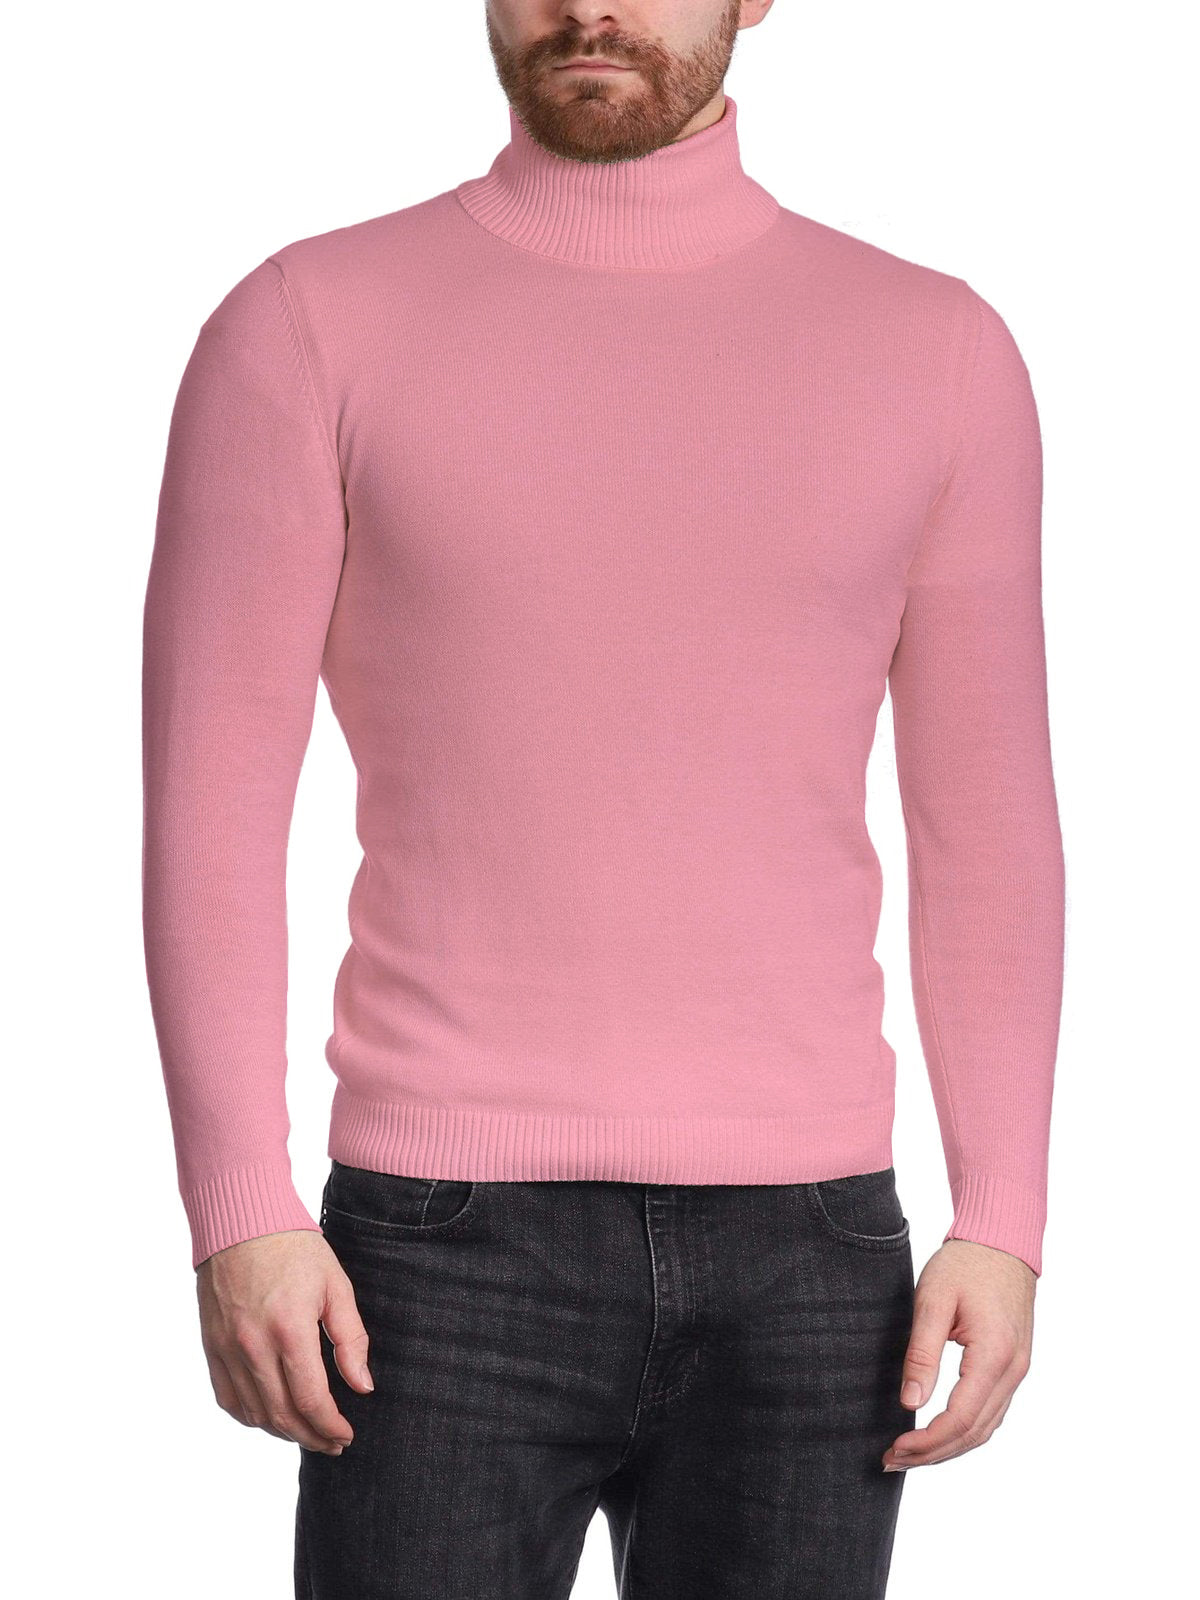 Arthur Black Men&#39;s Solid Pink Pullover Cotton Blend Turtleneck Sweater Shirt